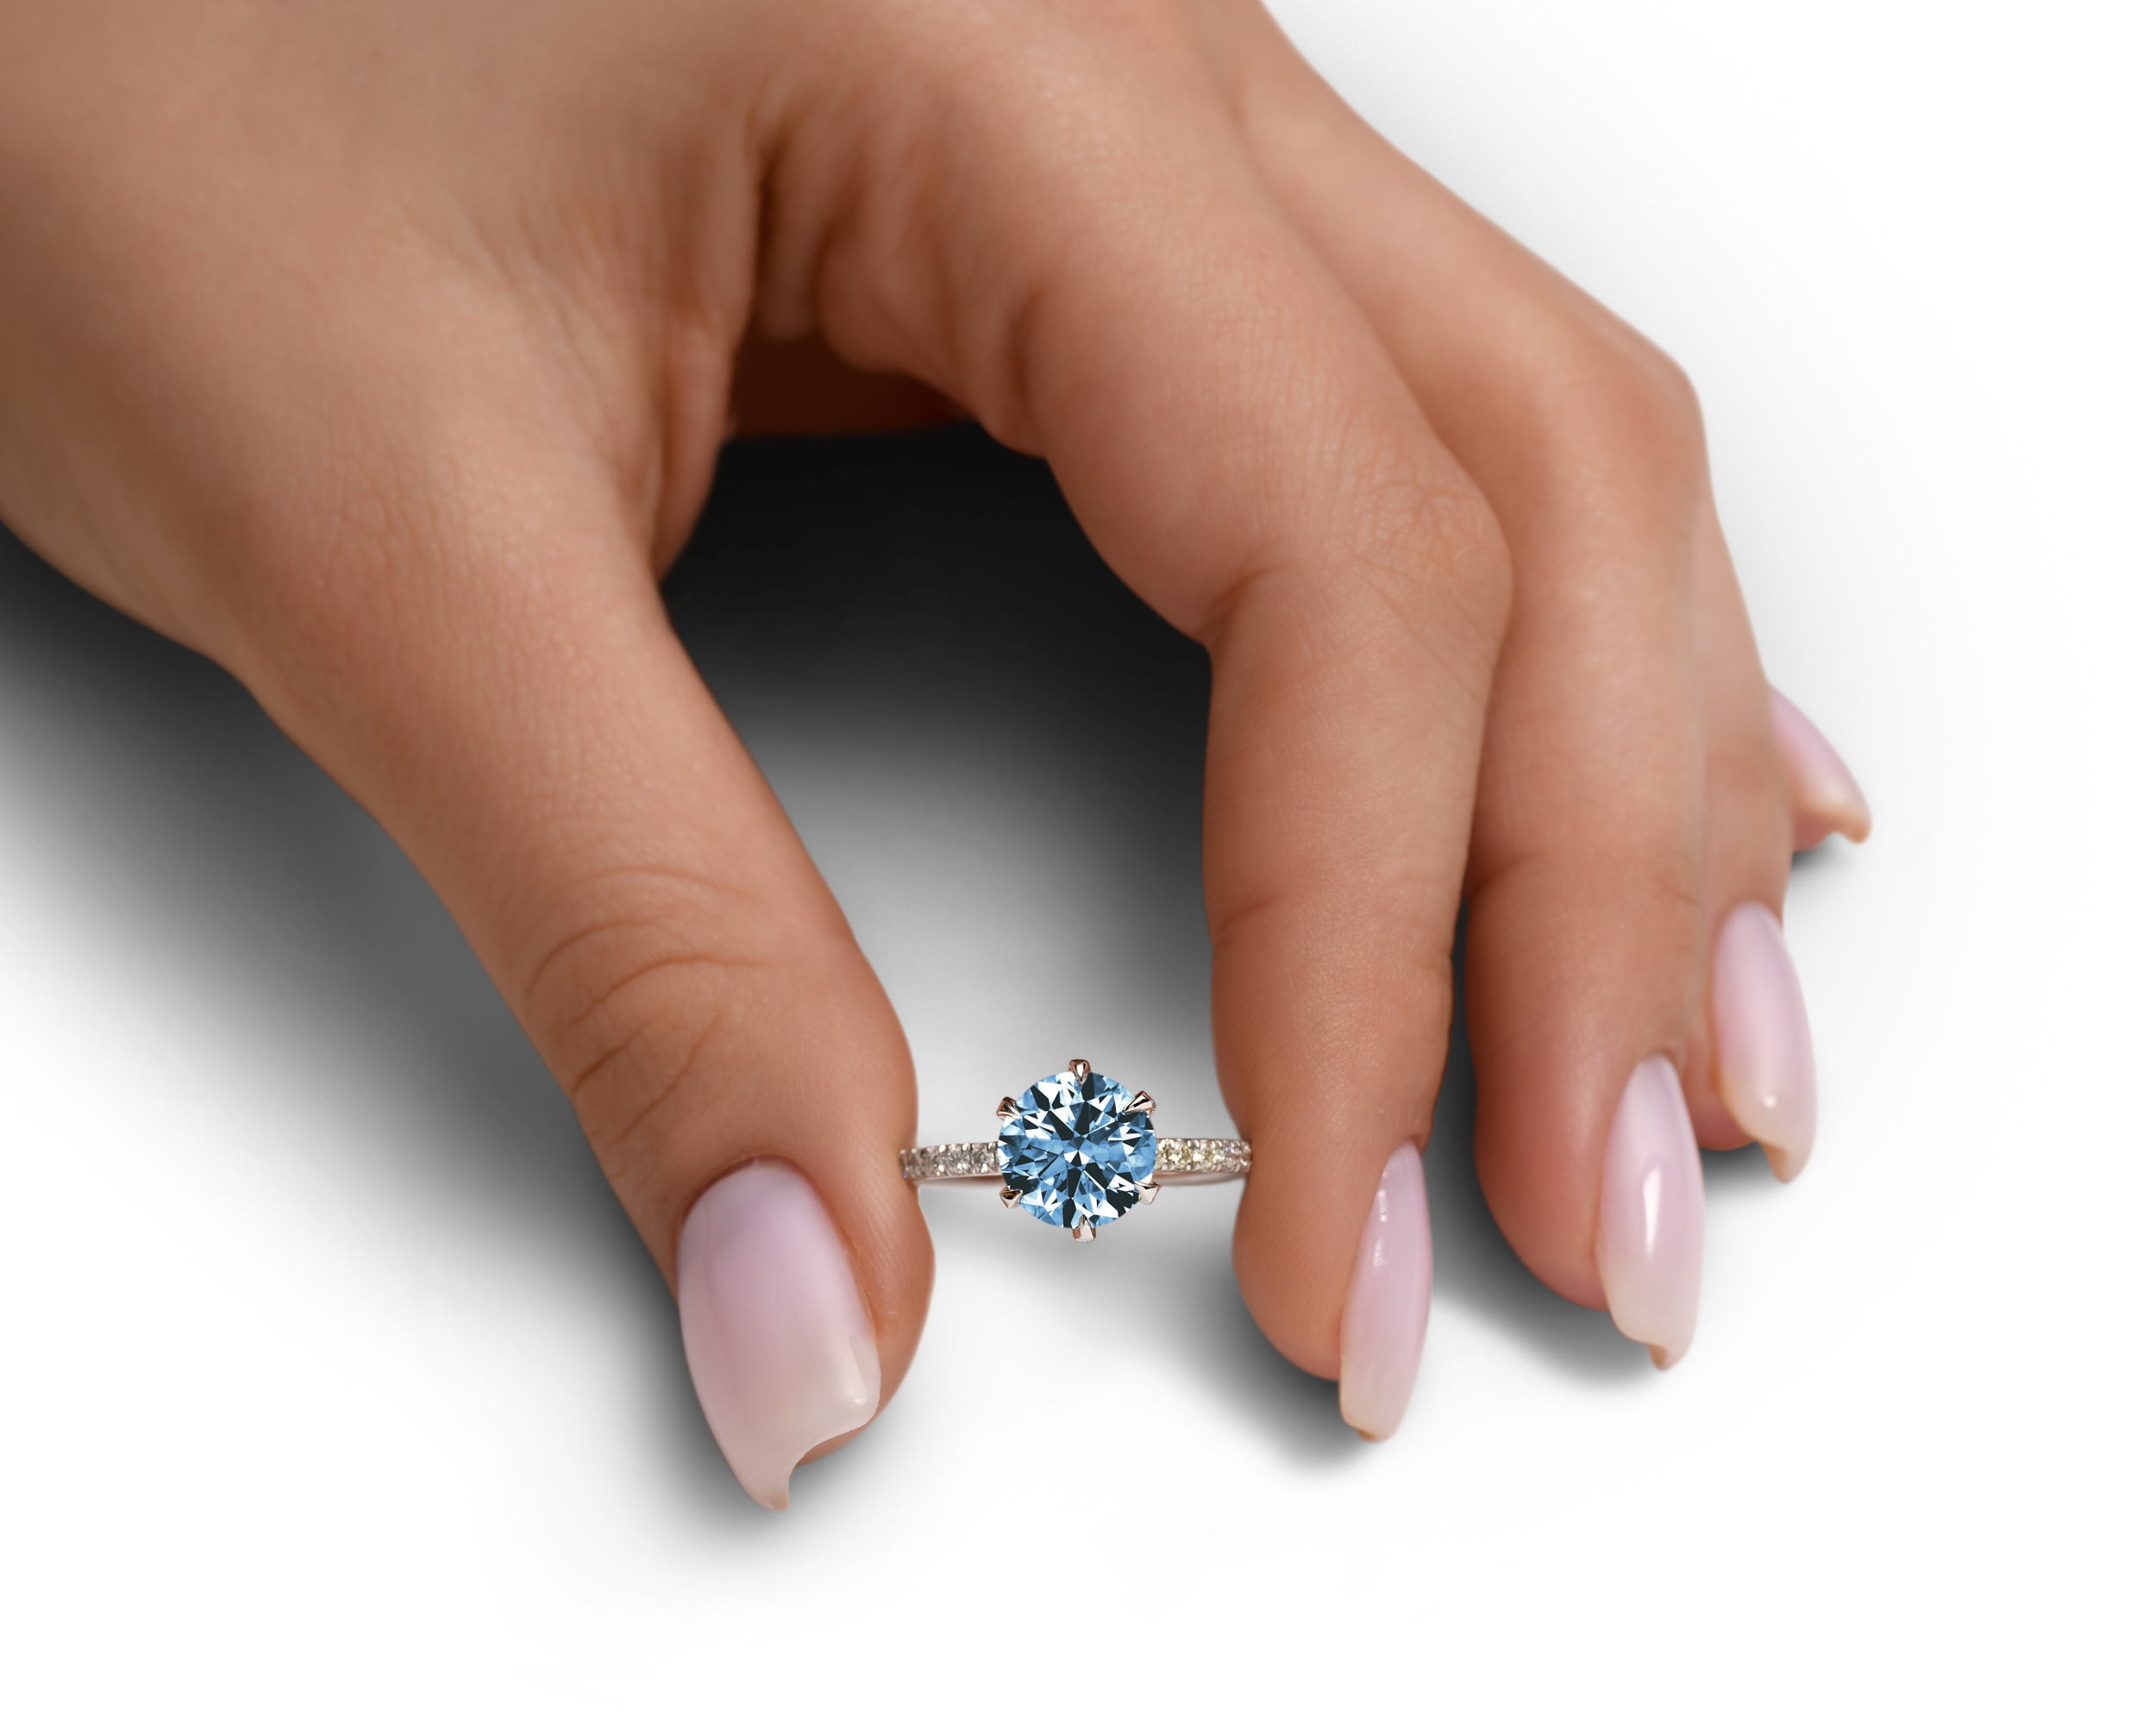 The Acacia - Anillo de compromiso con pavé de diamantes azules